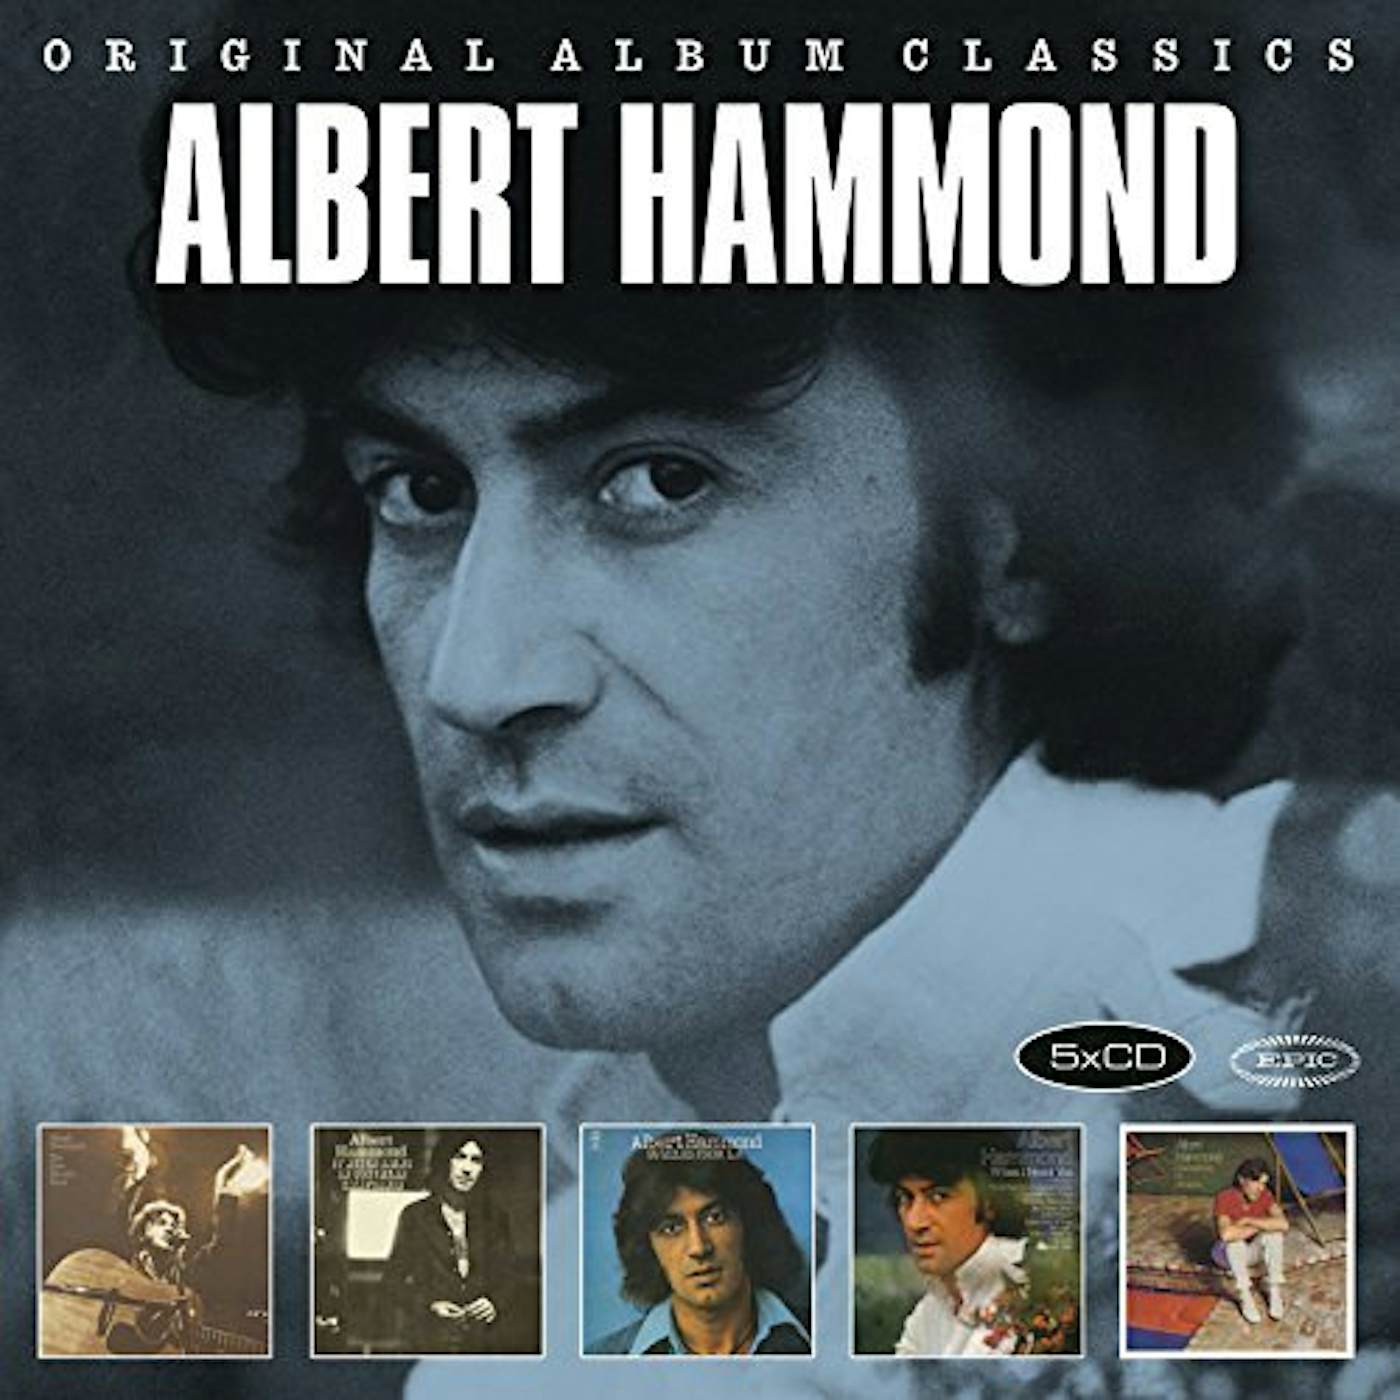 Albert Hammond ORIGINAL ALBUM CLASSICS CD